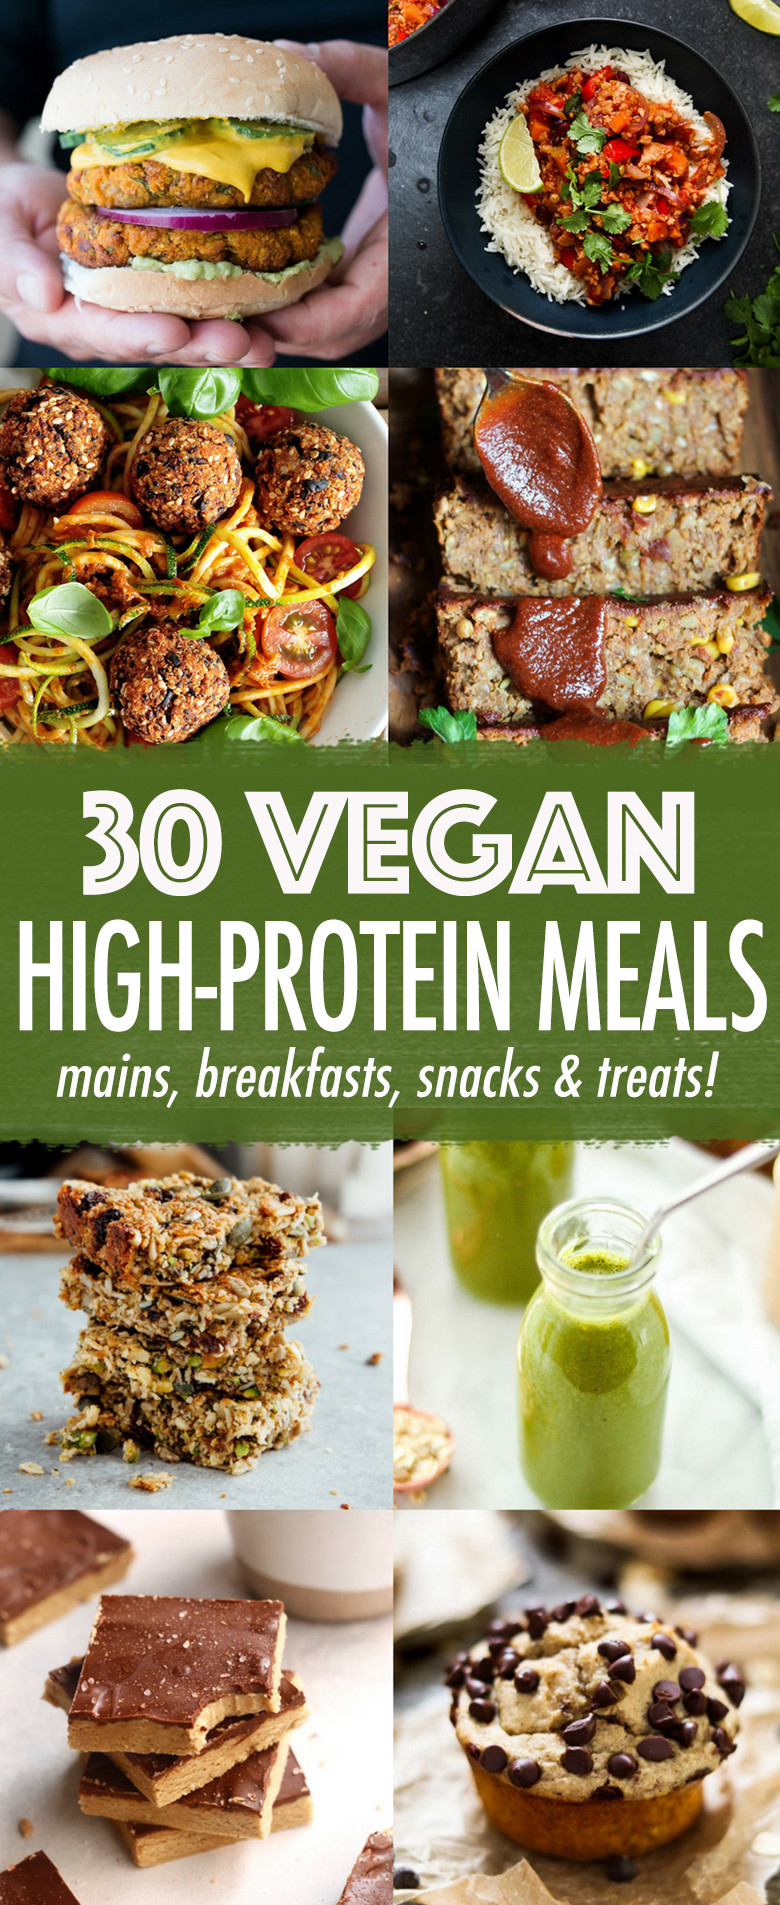 High Protein Vegetarian Snacks
 30 High protein Vegan Meals Wallflower Kitchen